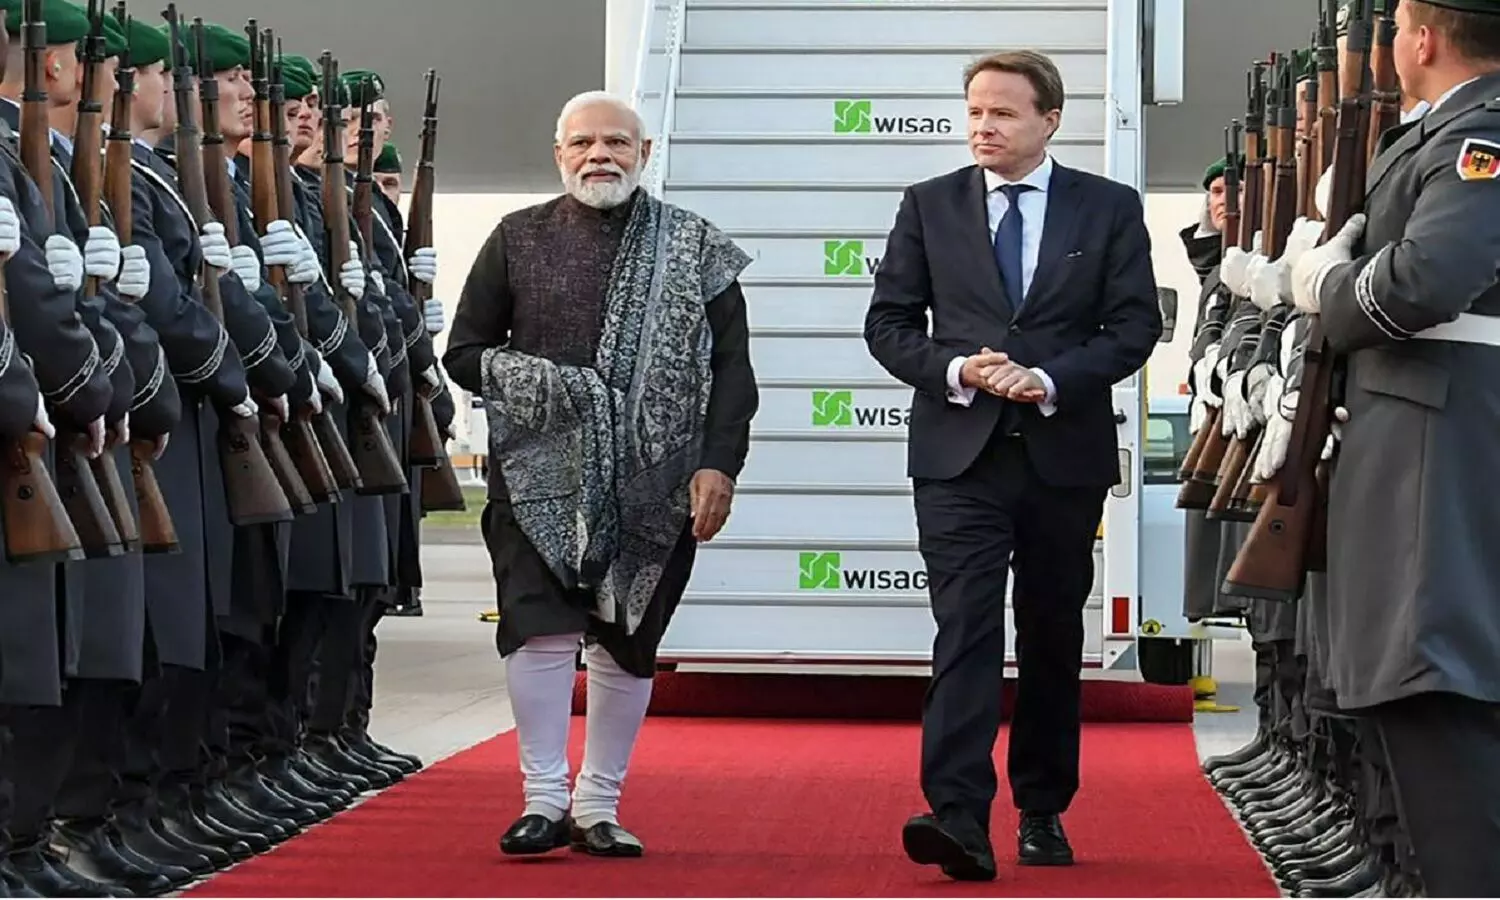 PM Modi In Germany: प्रधानमंत्री नरेंद्र मोदी जर्मनी यात्रा पर क्यों गए हैं, इसके बाद UAE भी जाएंगे